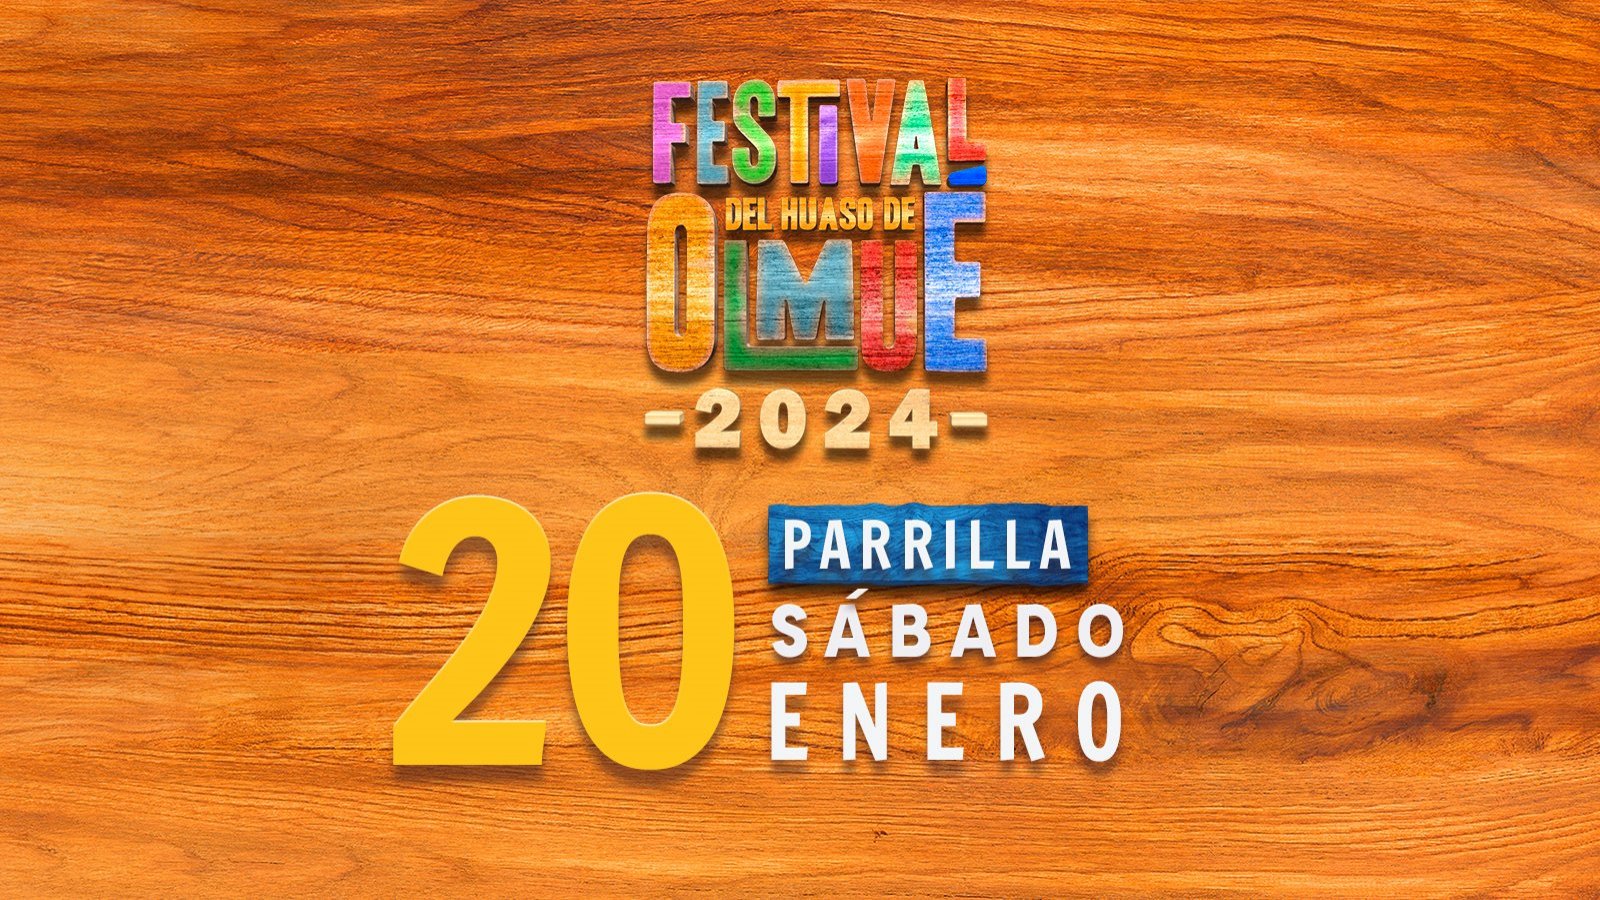 Festival de Olmué 2024: programación sábado 20 de enero